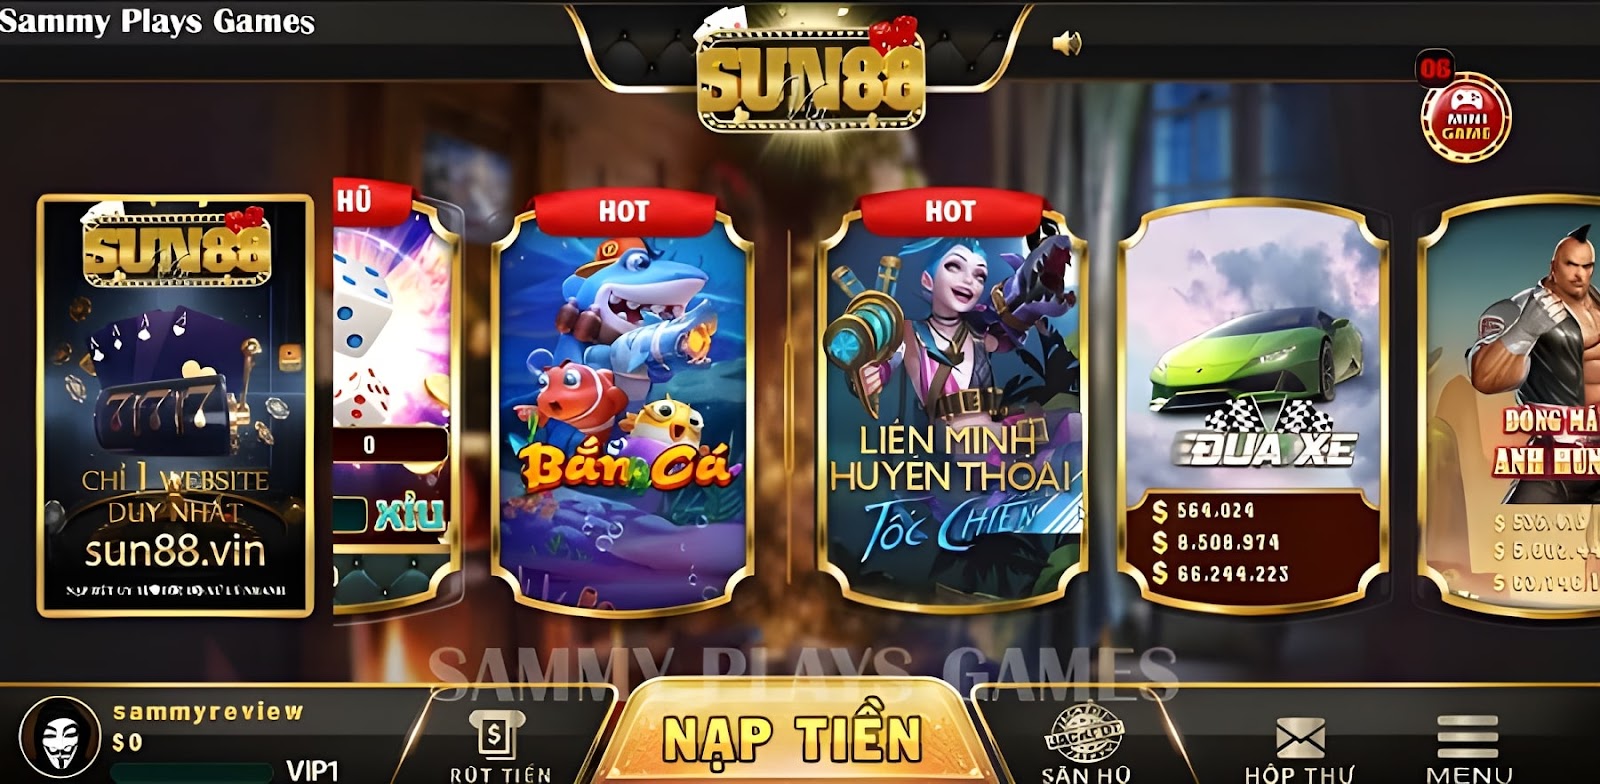 Sun88 Club Game Bài Đổi Thưởng, Tải Sun88 Club mới nhất APK, IOS, Android, Web